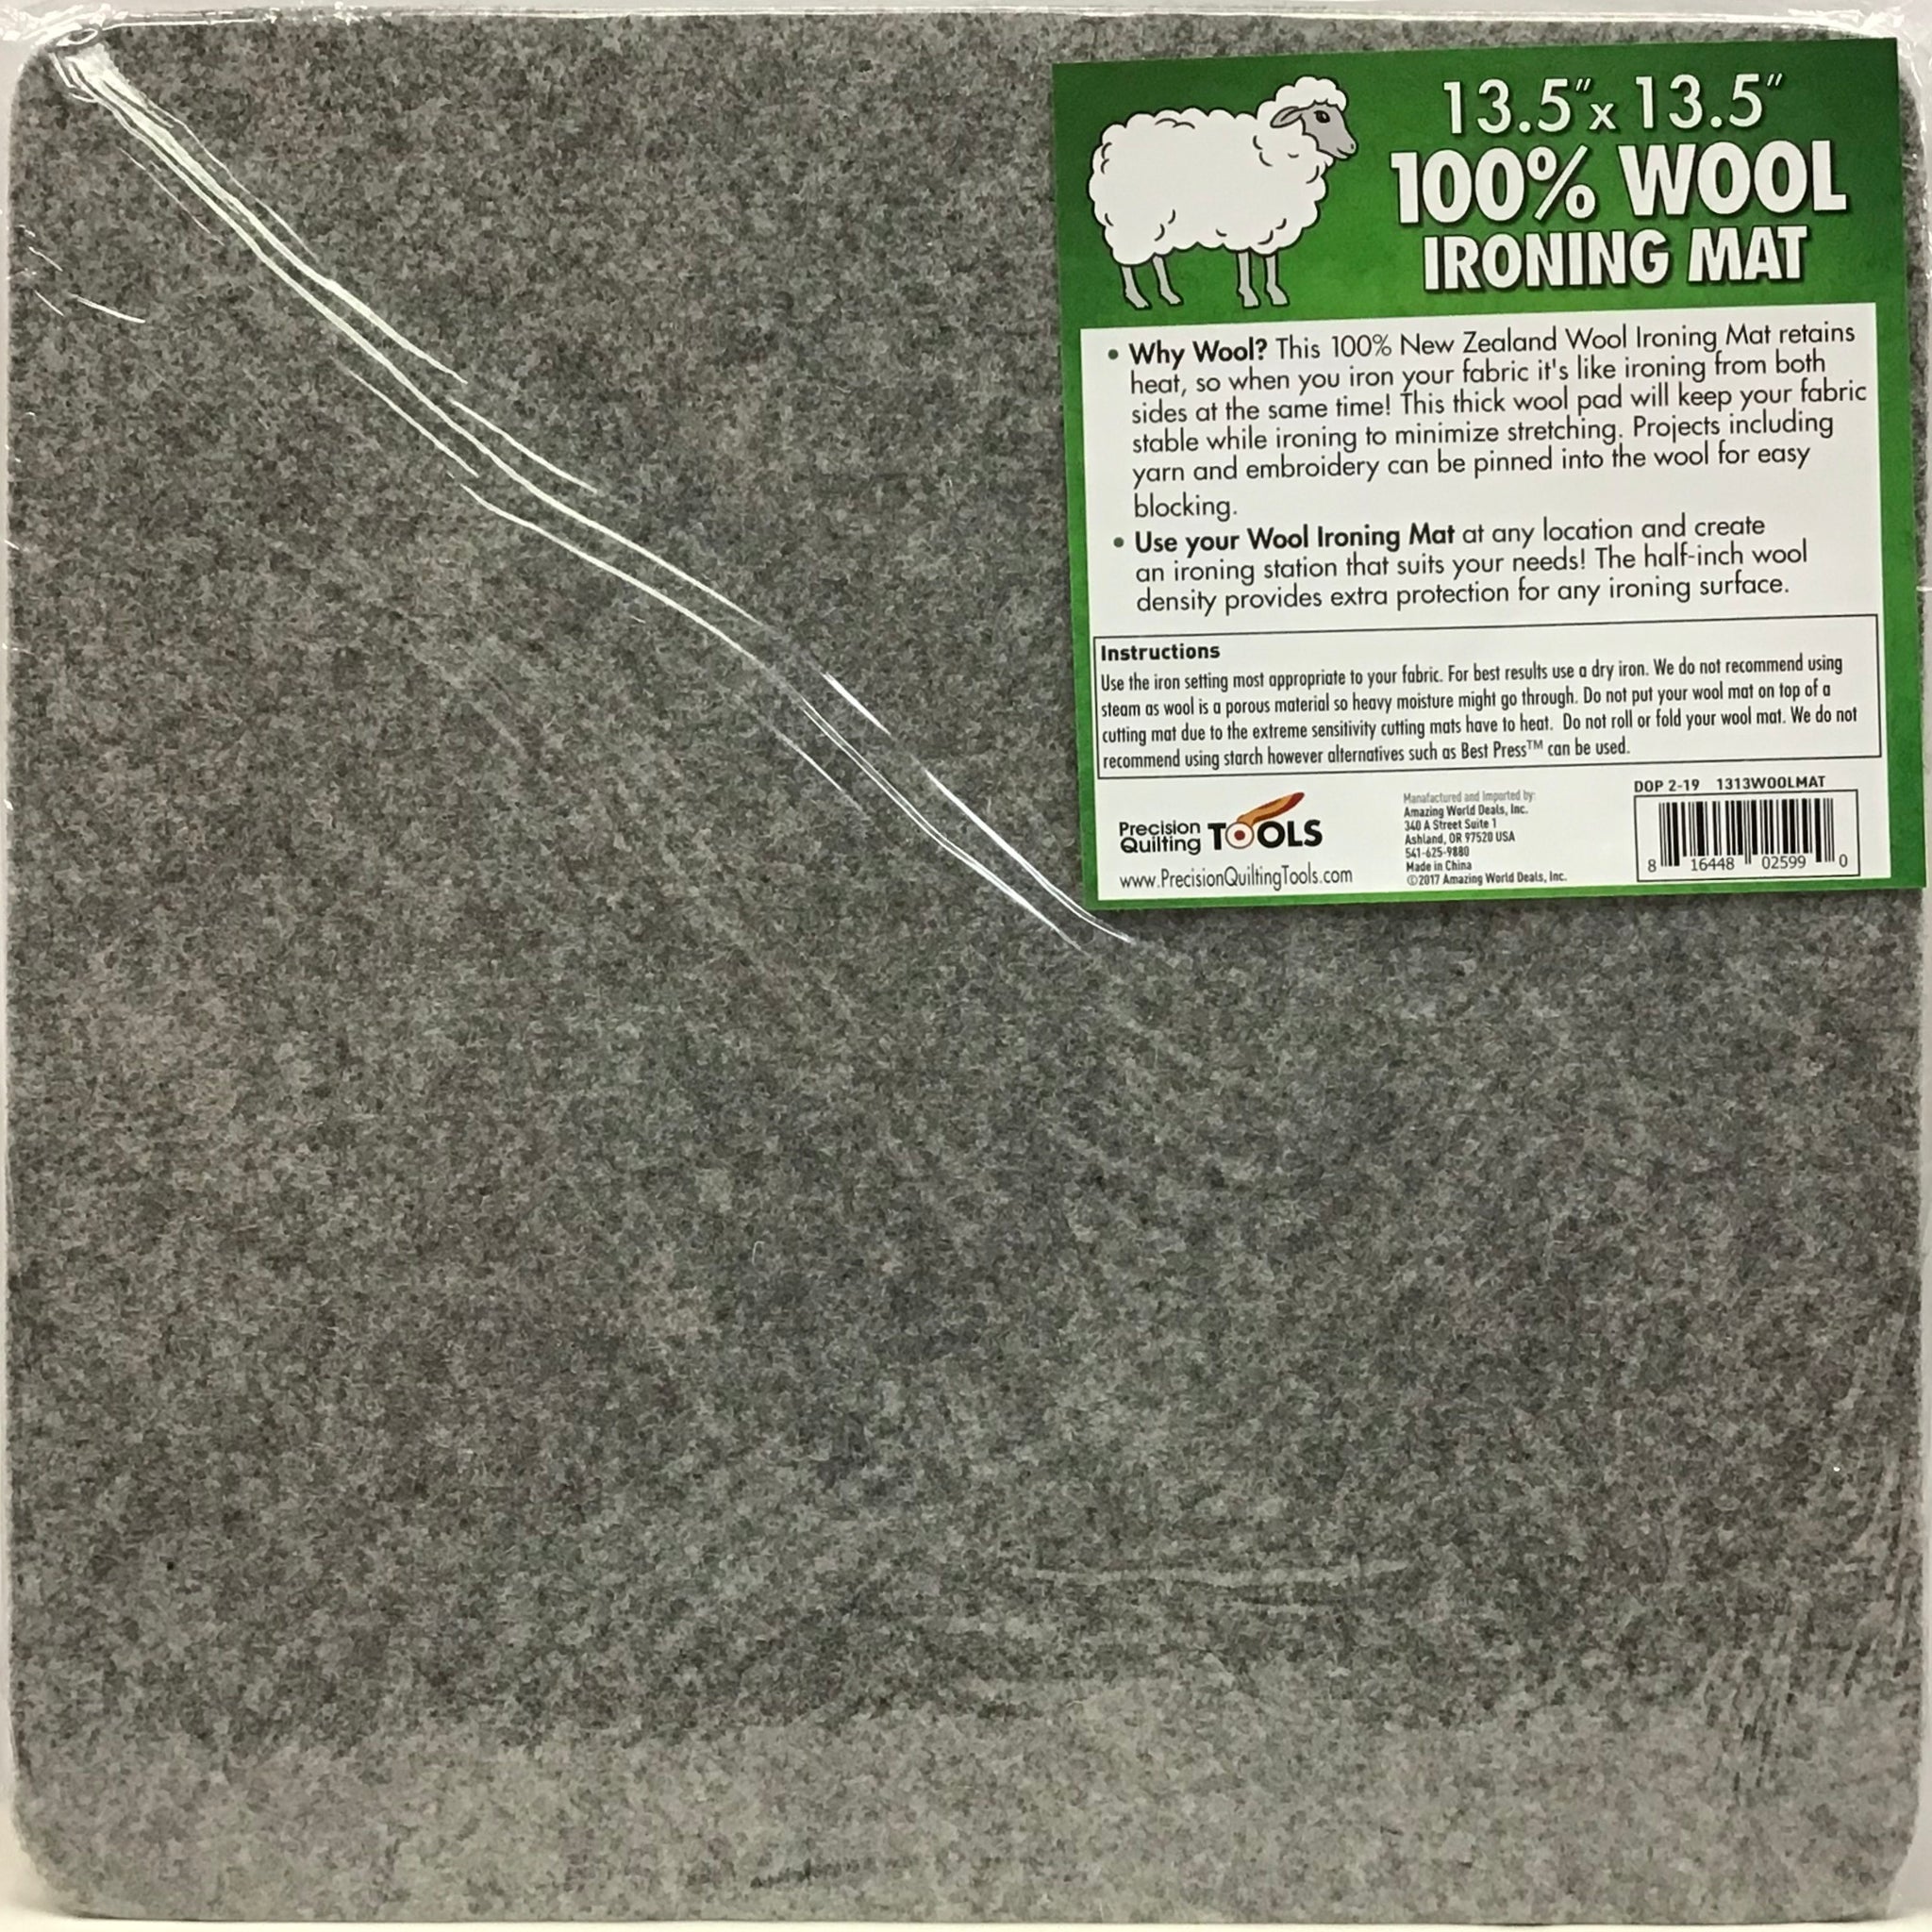 Ironing Mat - 100% Wool - 13.5” x 13.5”